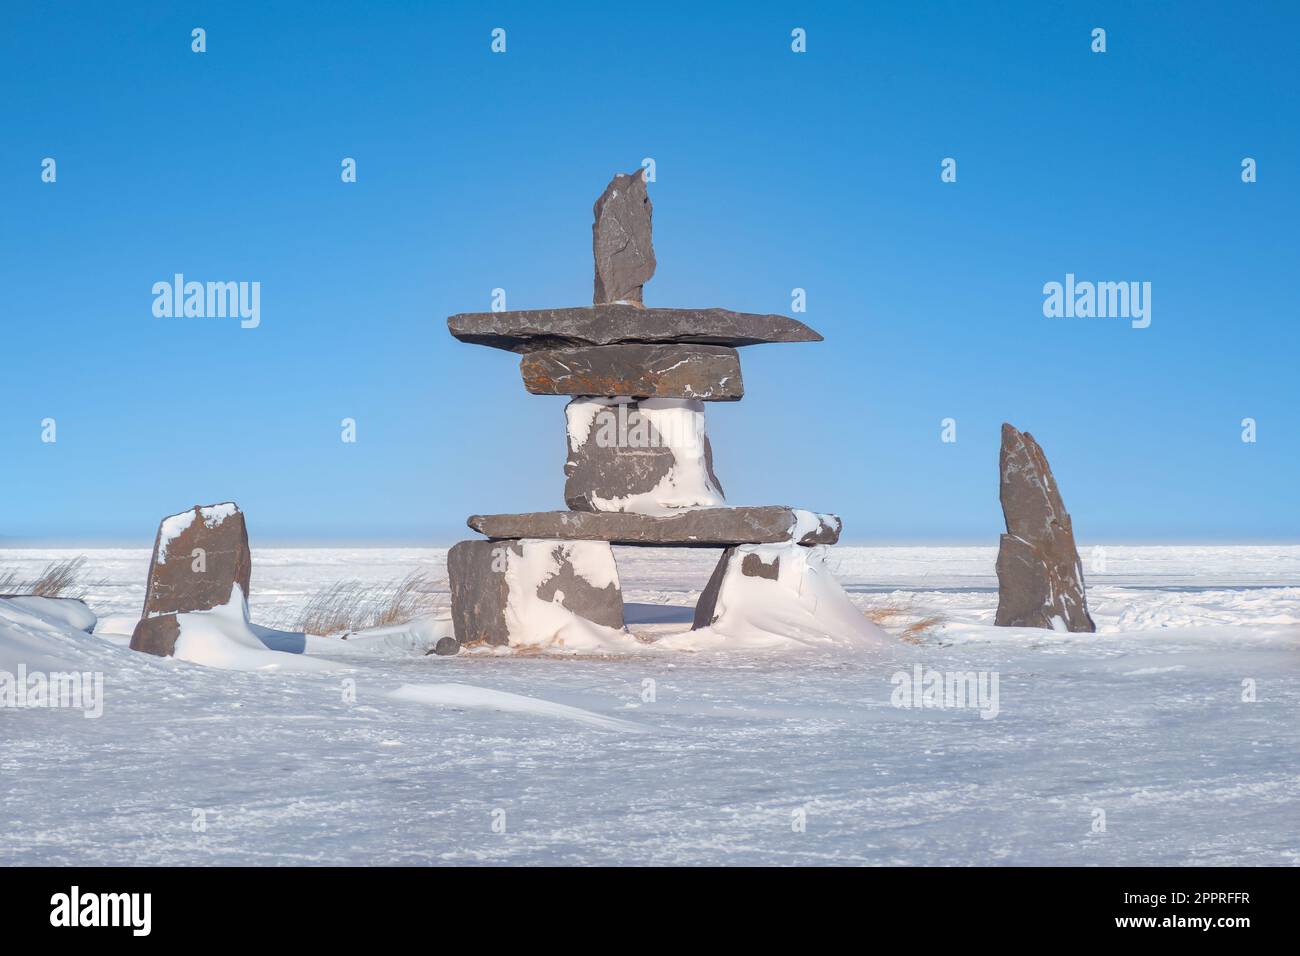 Un hito cultural del Ártico conocido como Inukshuk, utilizado como ayuda a la navegación y comunicación por los pueblos de las Primeras Naciones en el norte de Canadá. Churchill Foto de stock